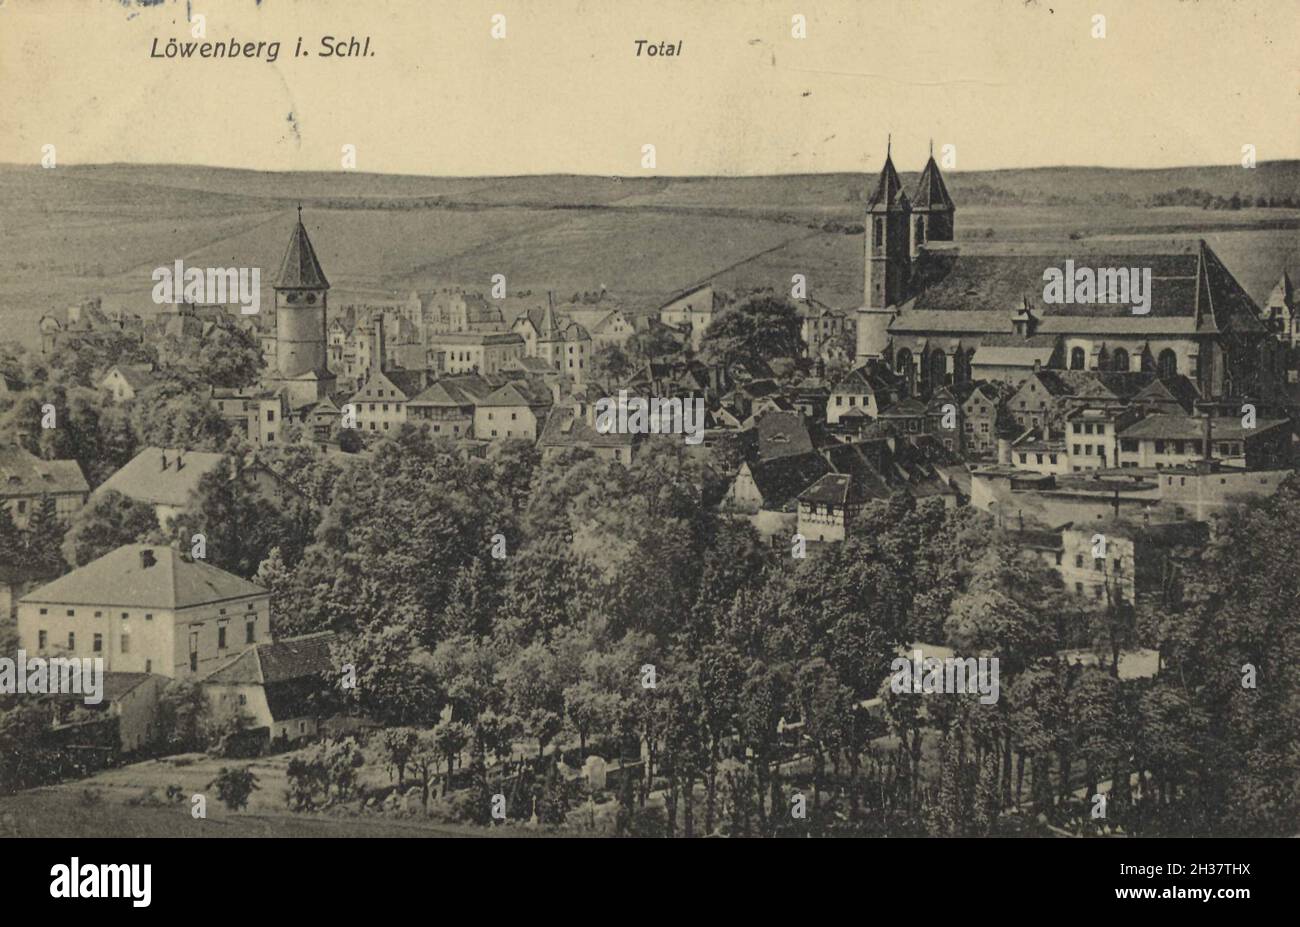 Löwernberg in Schlesien, heute Lwowek Slaski, Stadt der Woiwodschaft Niederschlesien in Polen, Ansicht von ca 1910, digitale Reproduktion einer gemeinfreien Postkarte Banque D'Images